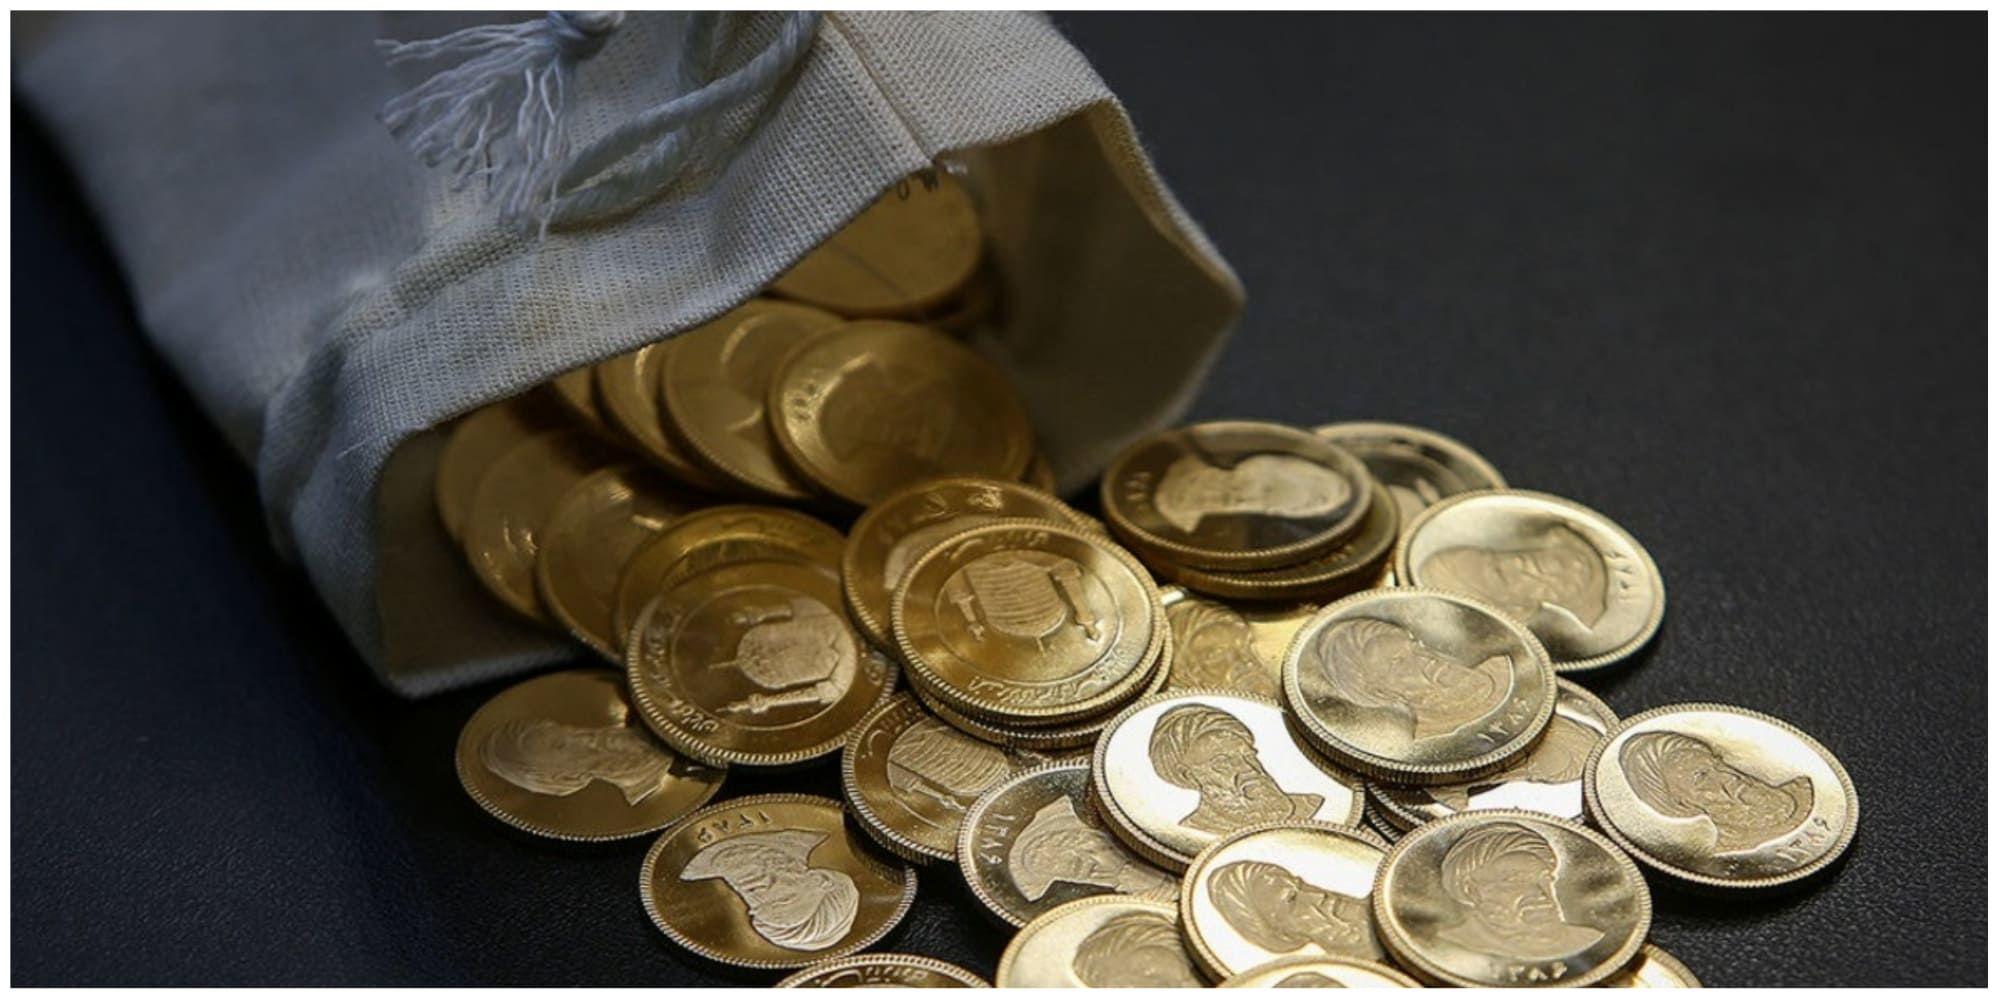 افزایش وحشتناک قیمت سکه در اول هفته | طلا، سکه و دلار همچنان می تازند | جدیدترین قیمت سکه و طلا و دلار در بازار امروز ؛ ۱۴ آبان ۱۴۰۱